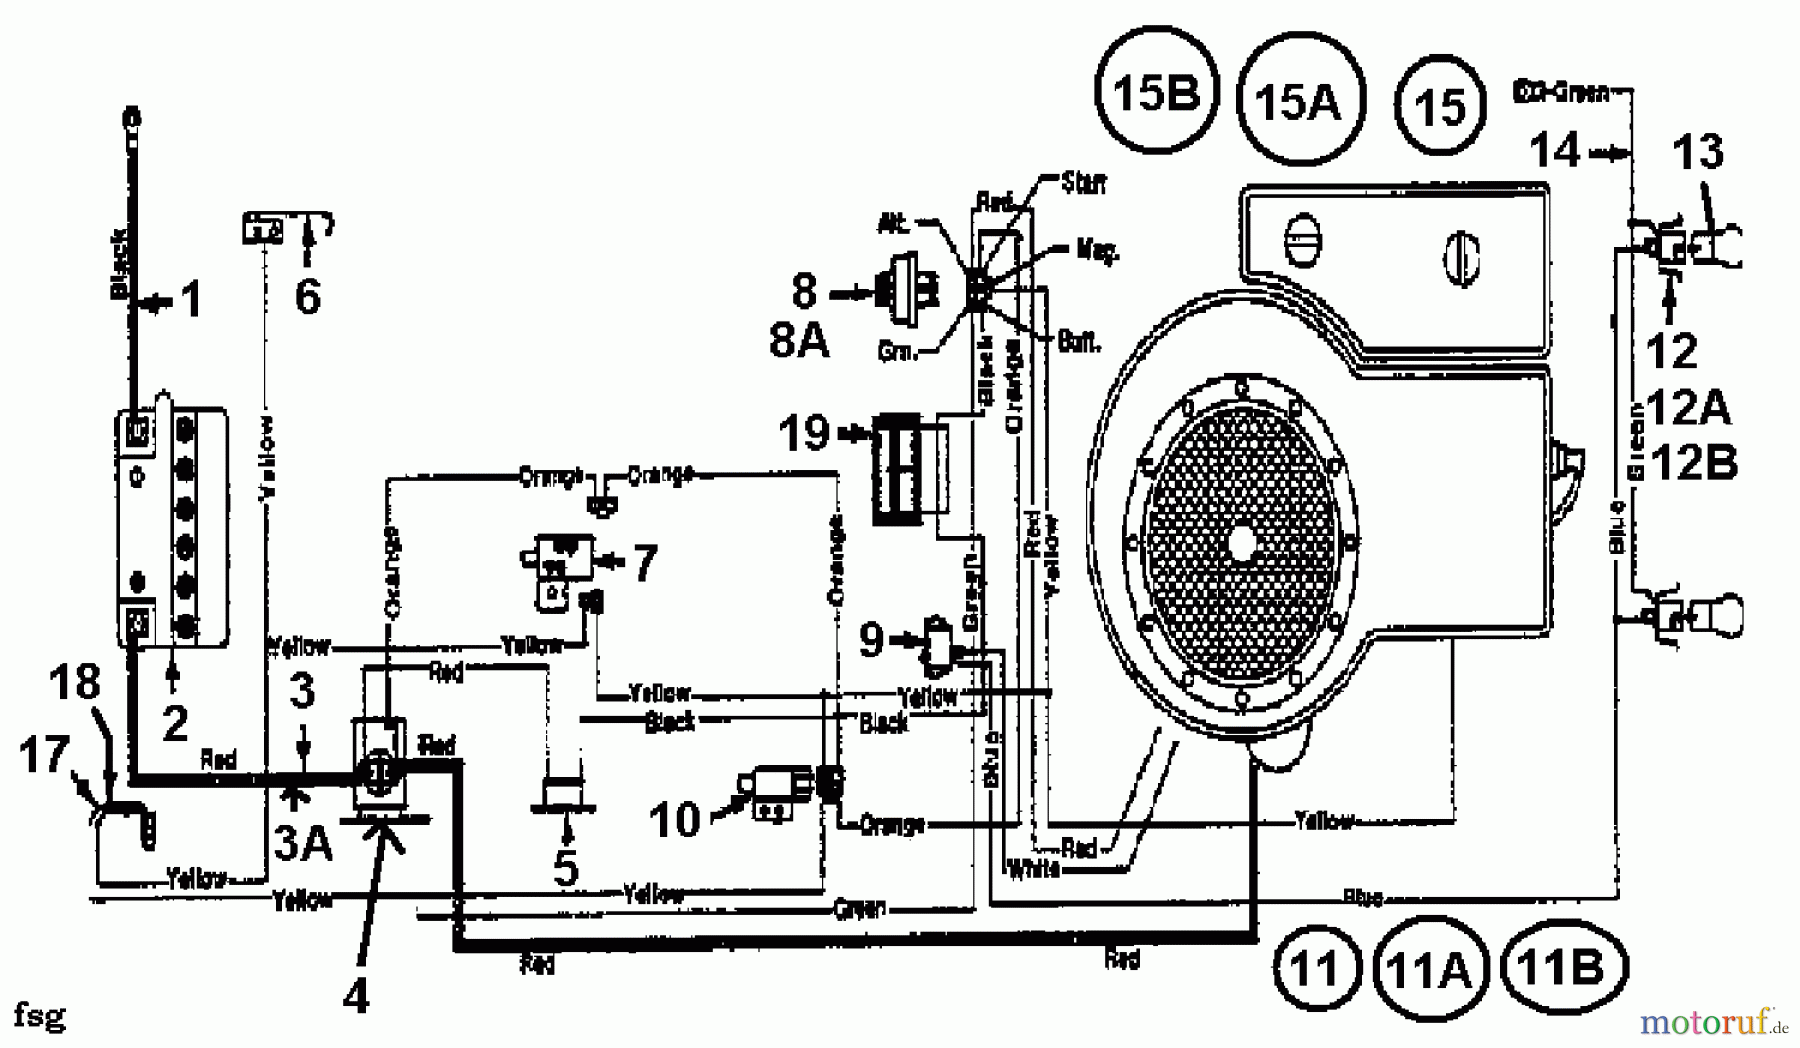  Motec Tracteurs de pelouse GT 12 LR 132-451E632  (1992) Plan électrique cylindre simple